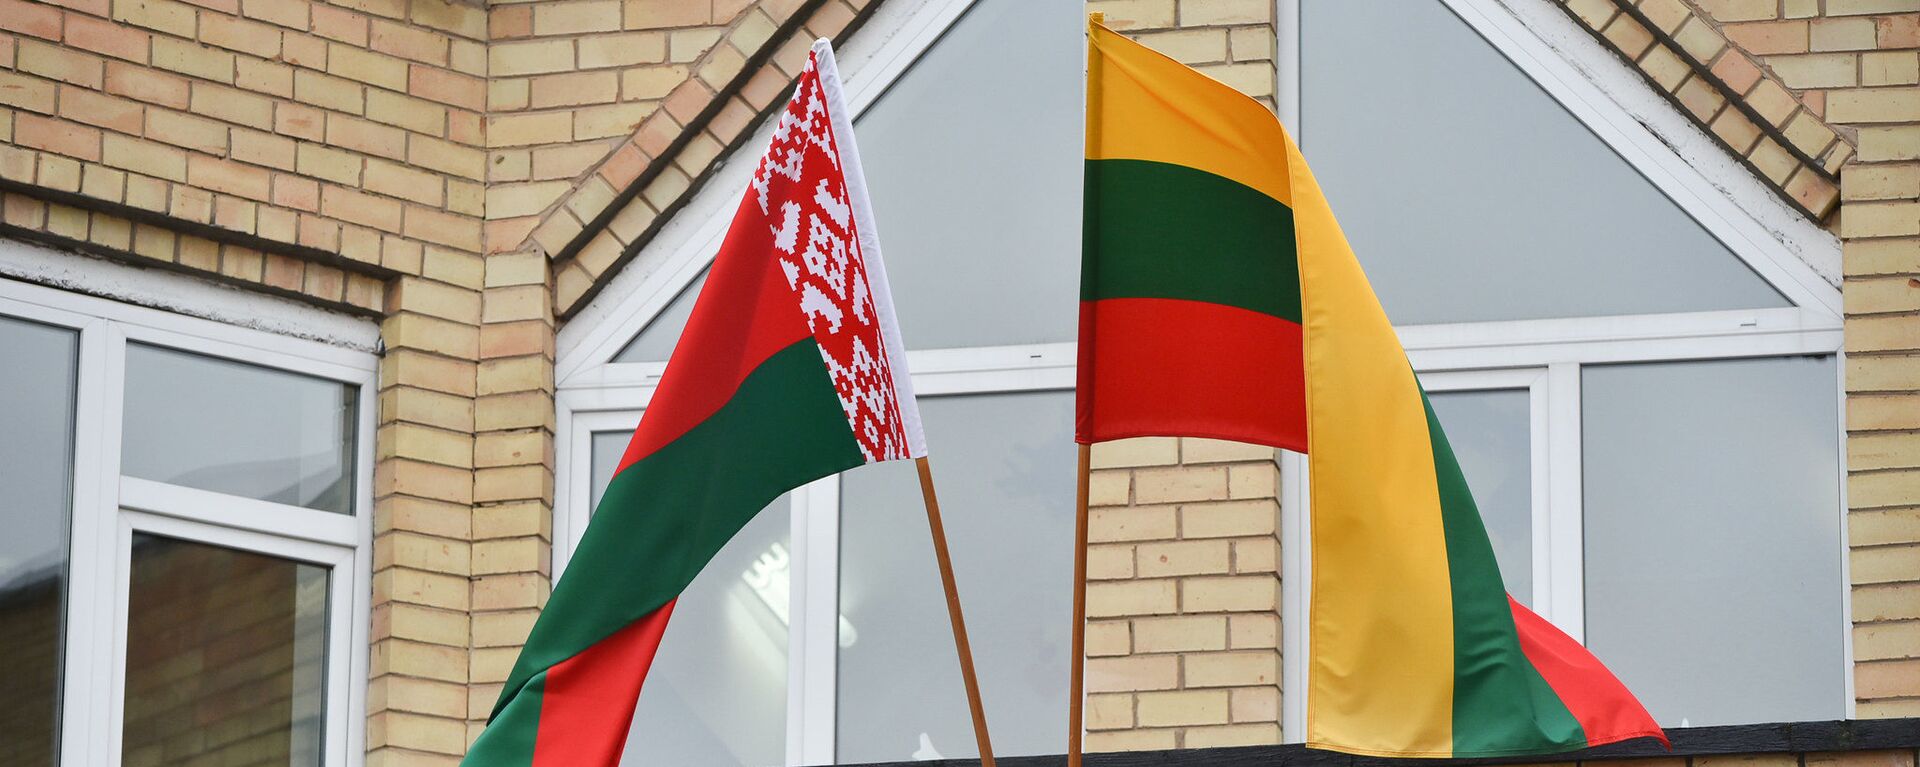 Флаги Литвы и Белоруссии, архивное фото - Sputnik Lietuva, 1920, 26.05.2021